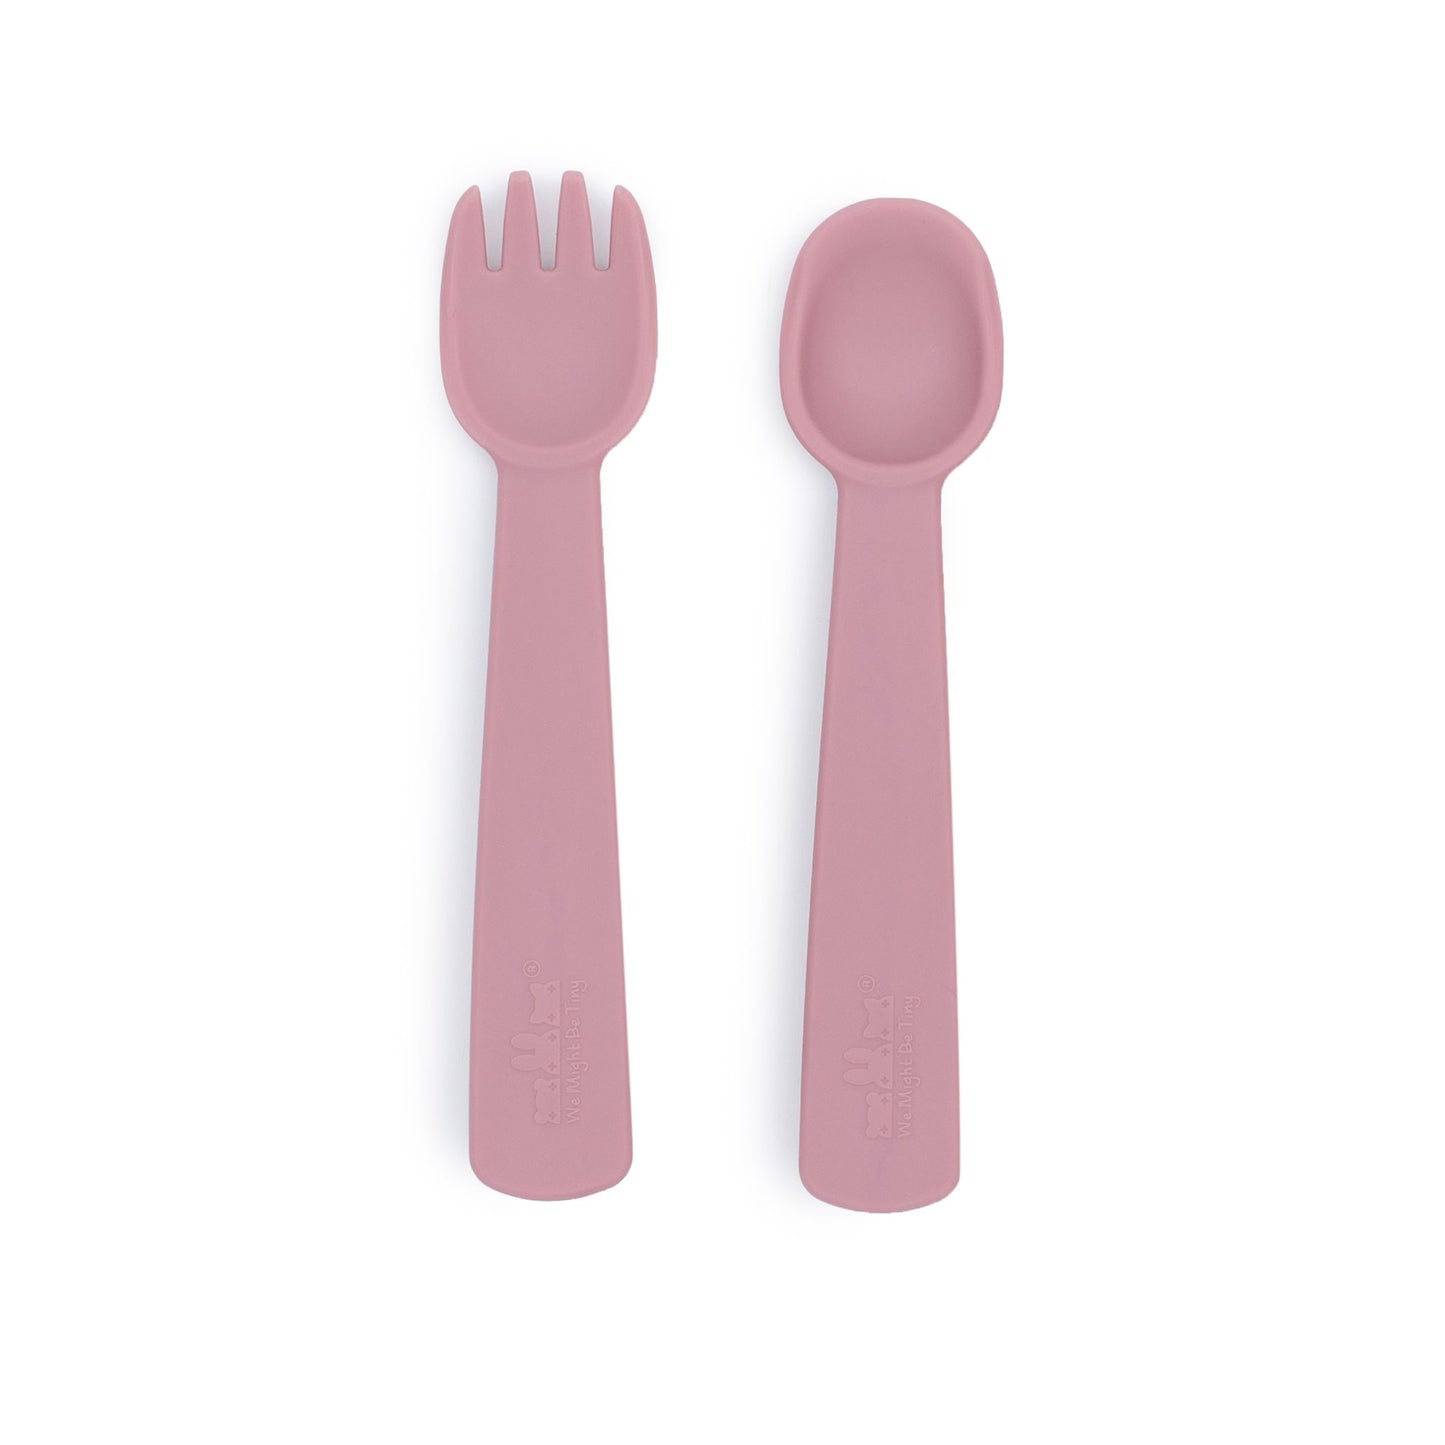 Feedie Fork & Spoon - Dusty Rose